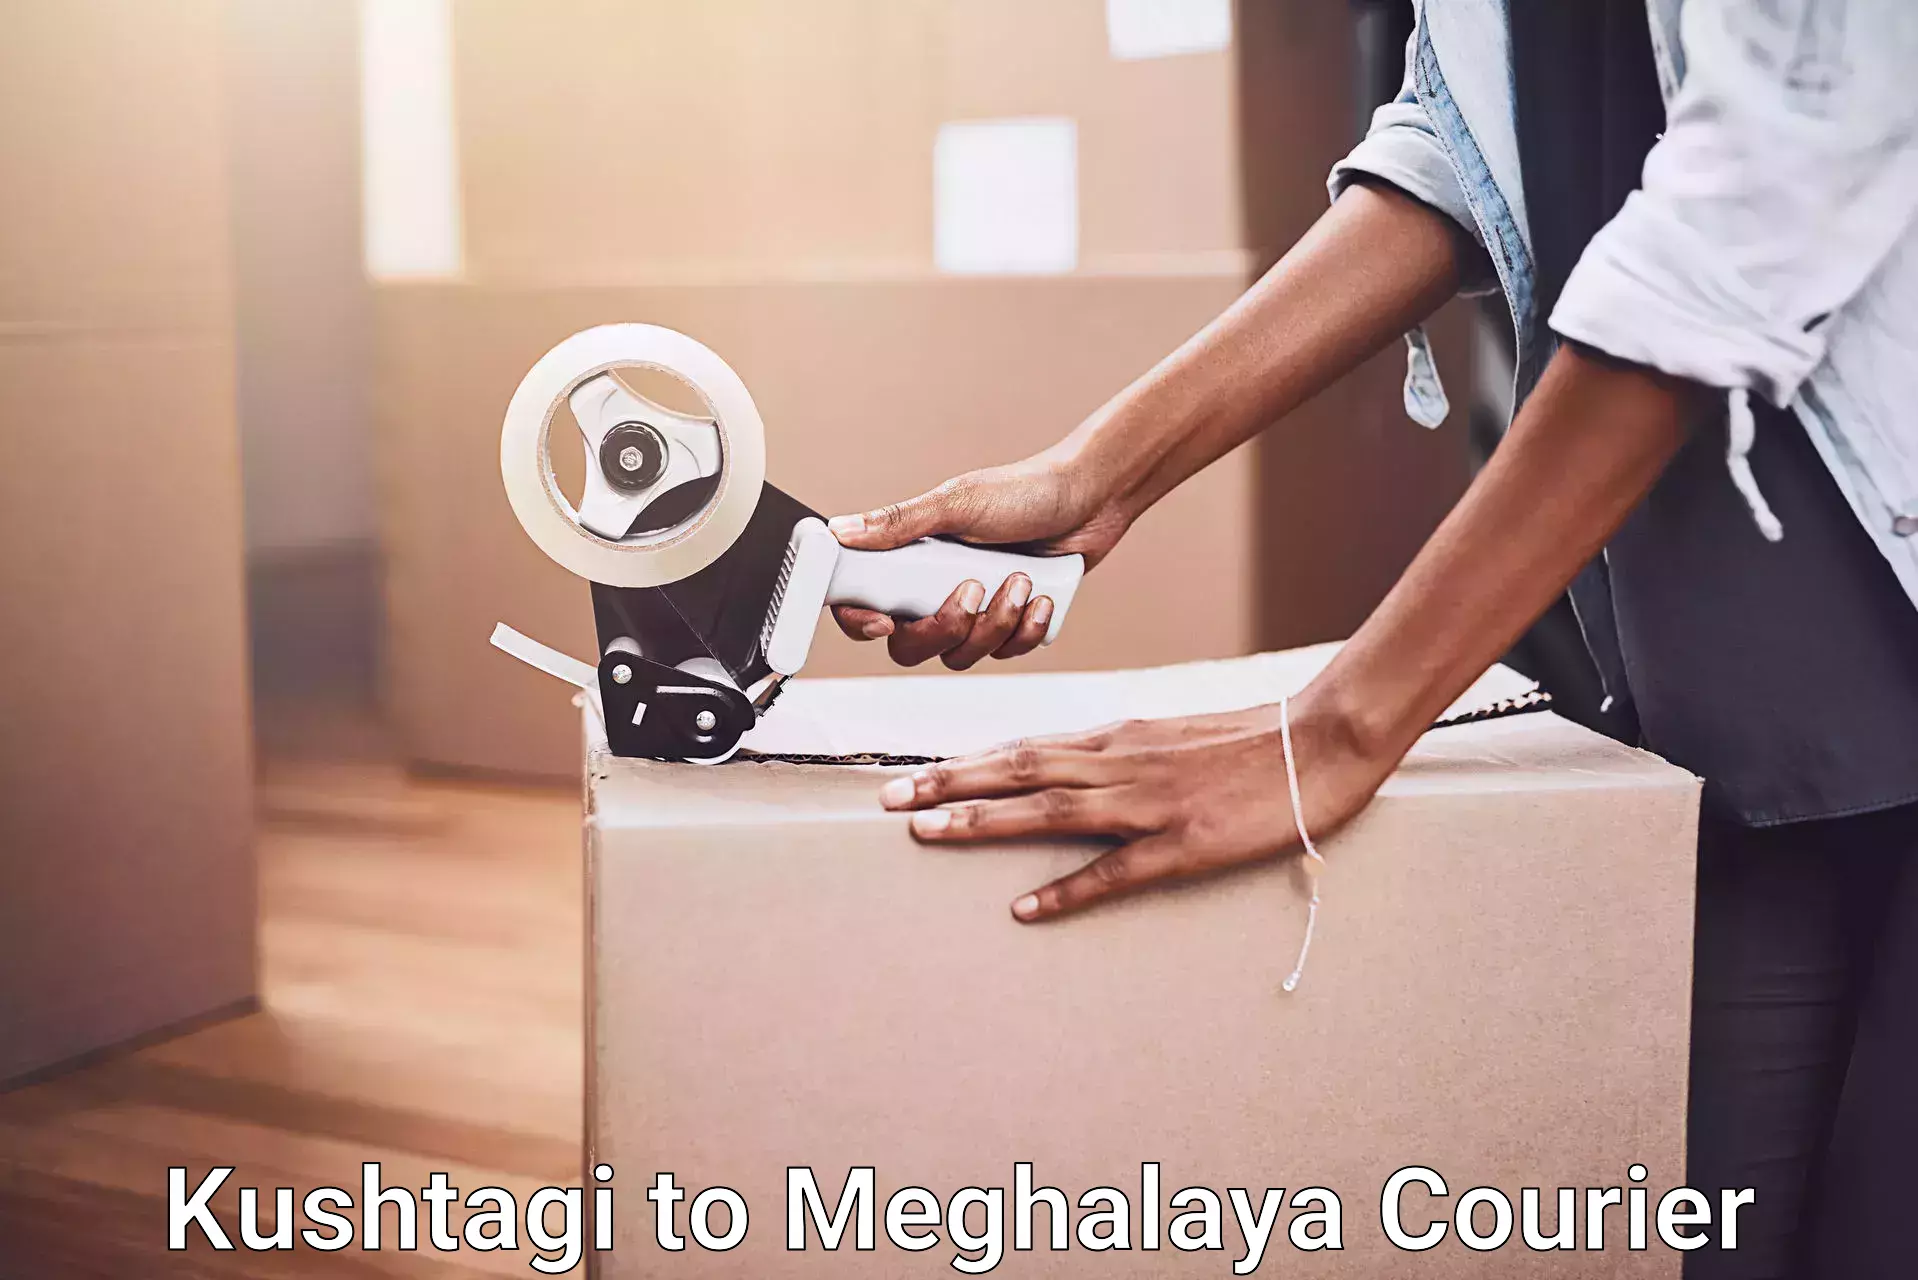 Furniture transport and storage Kushtagi to Meghalaya